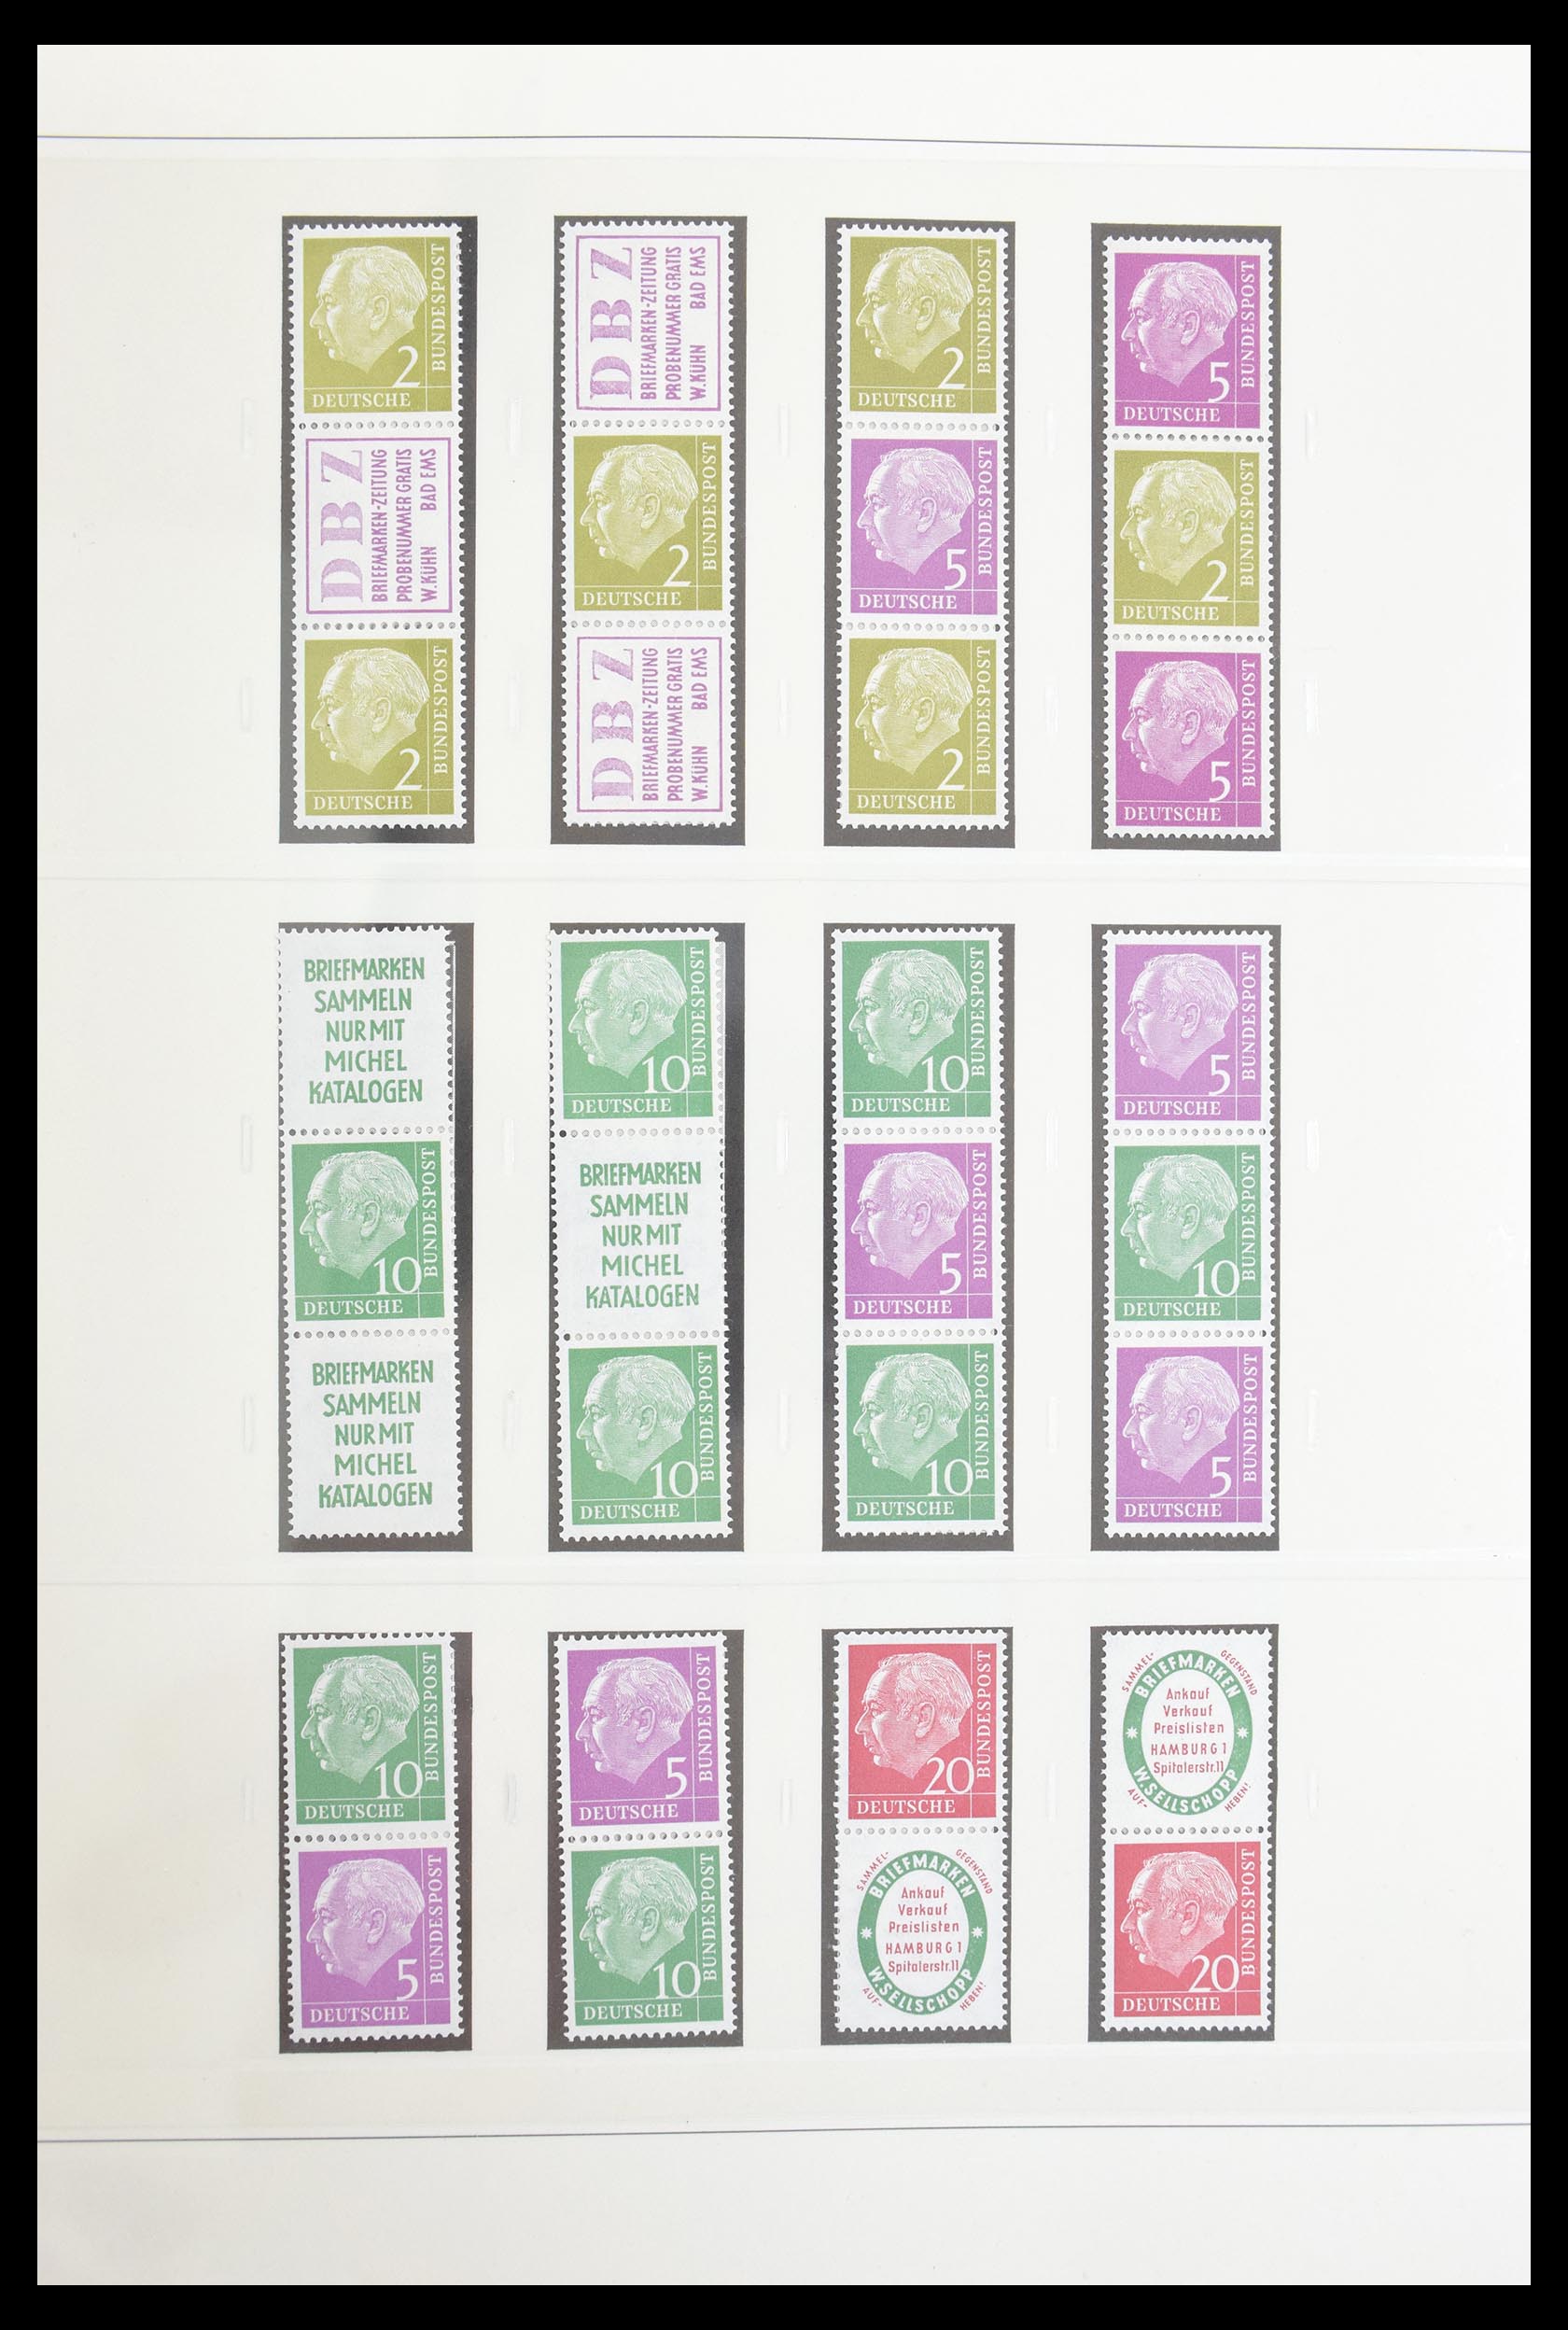 30605 004 - 30605 Bundespost combinations 1951-1974.